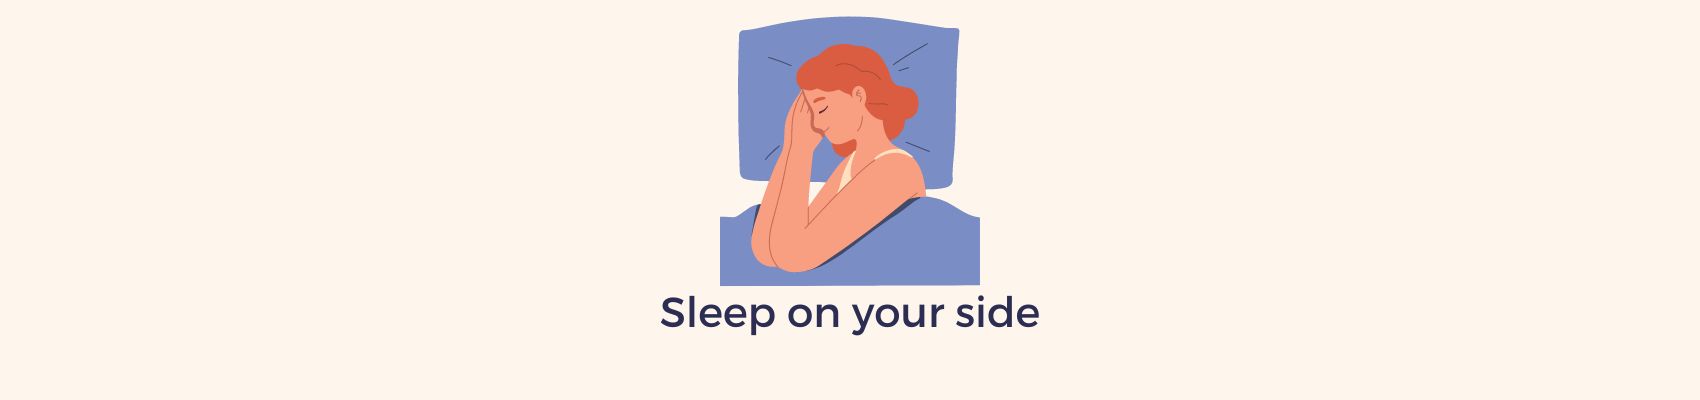 Sleep on side